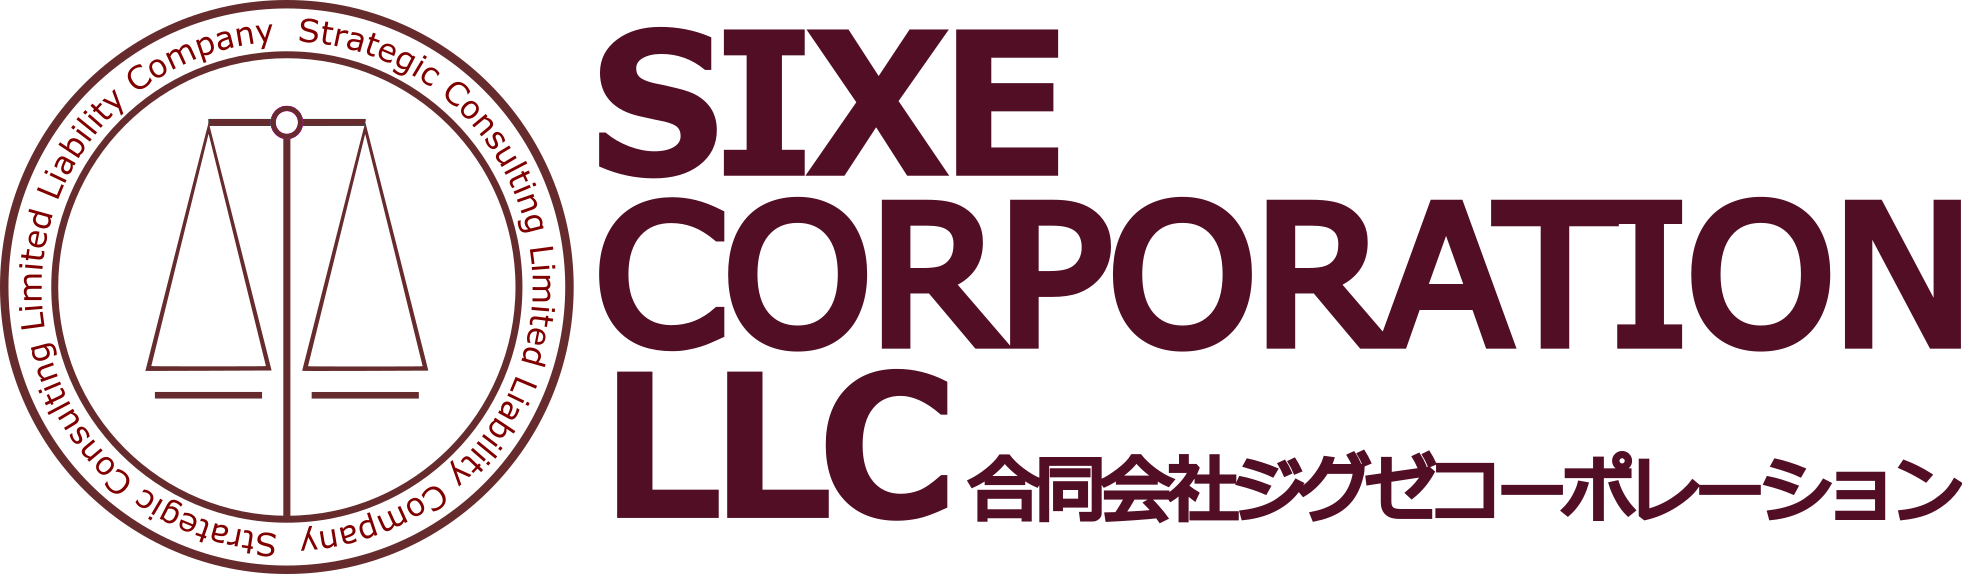 ジグゼコーポレーション(Sixe Corporation)